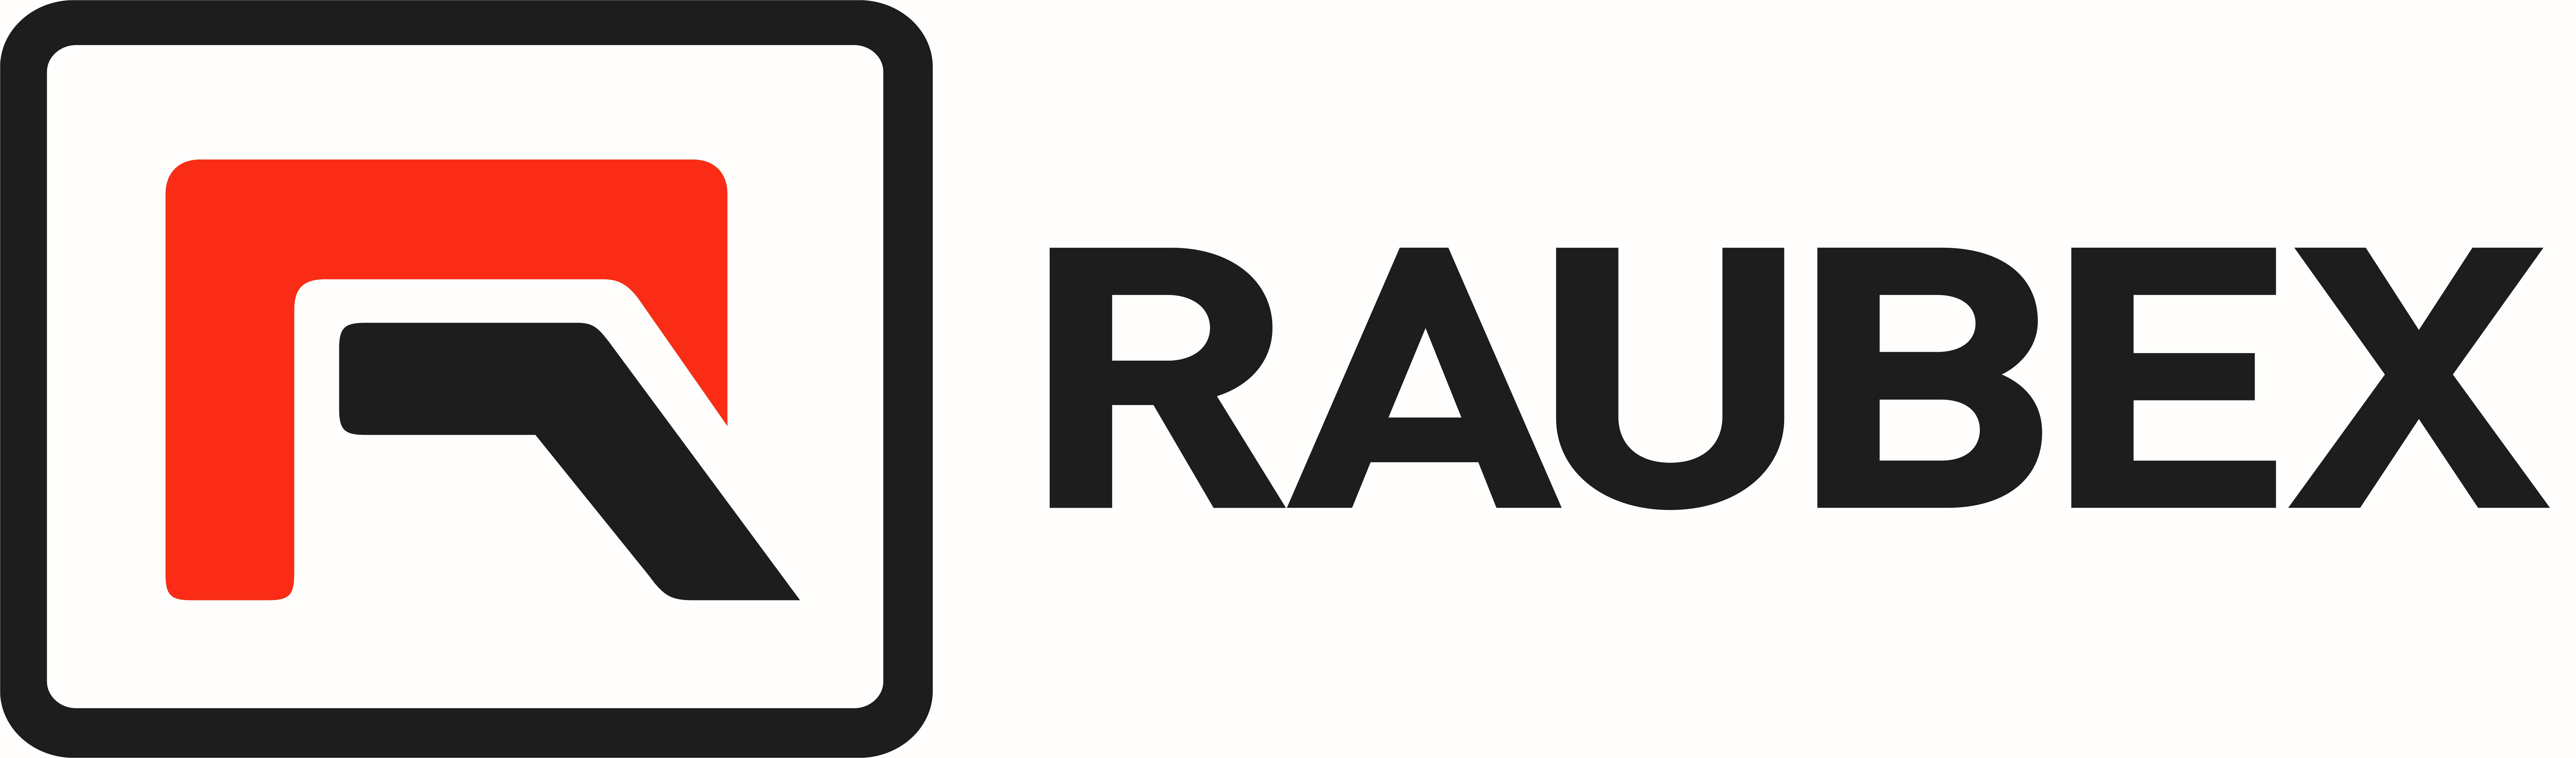 Raubex logo